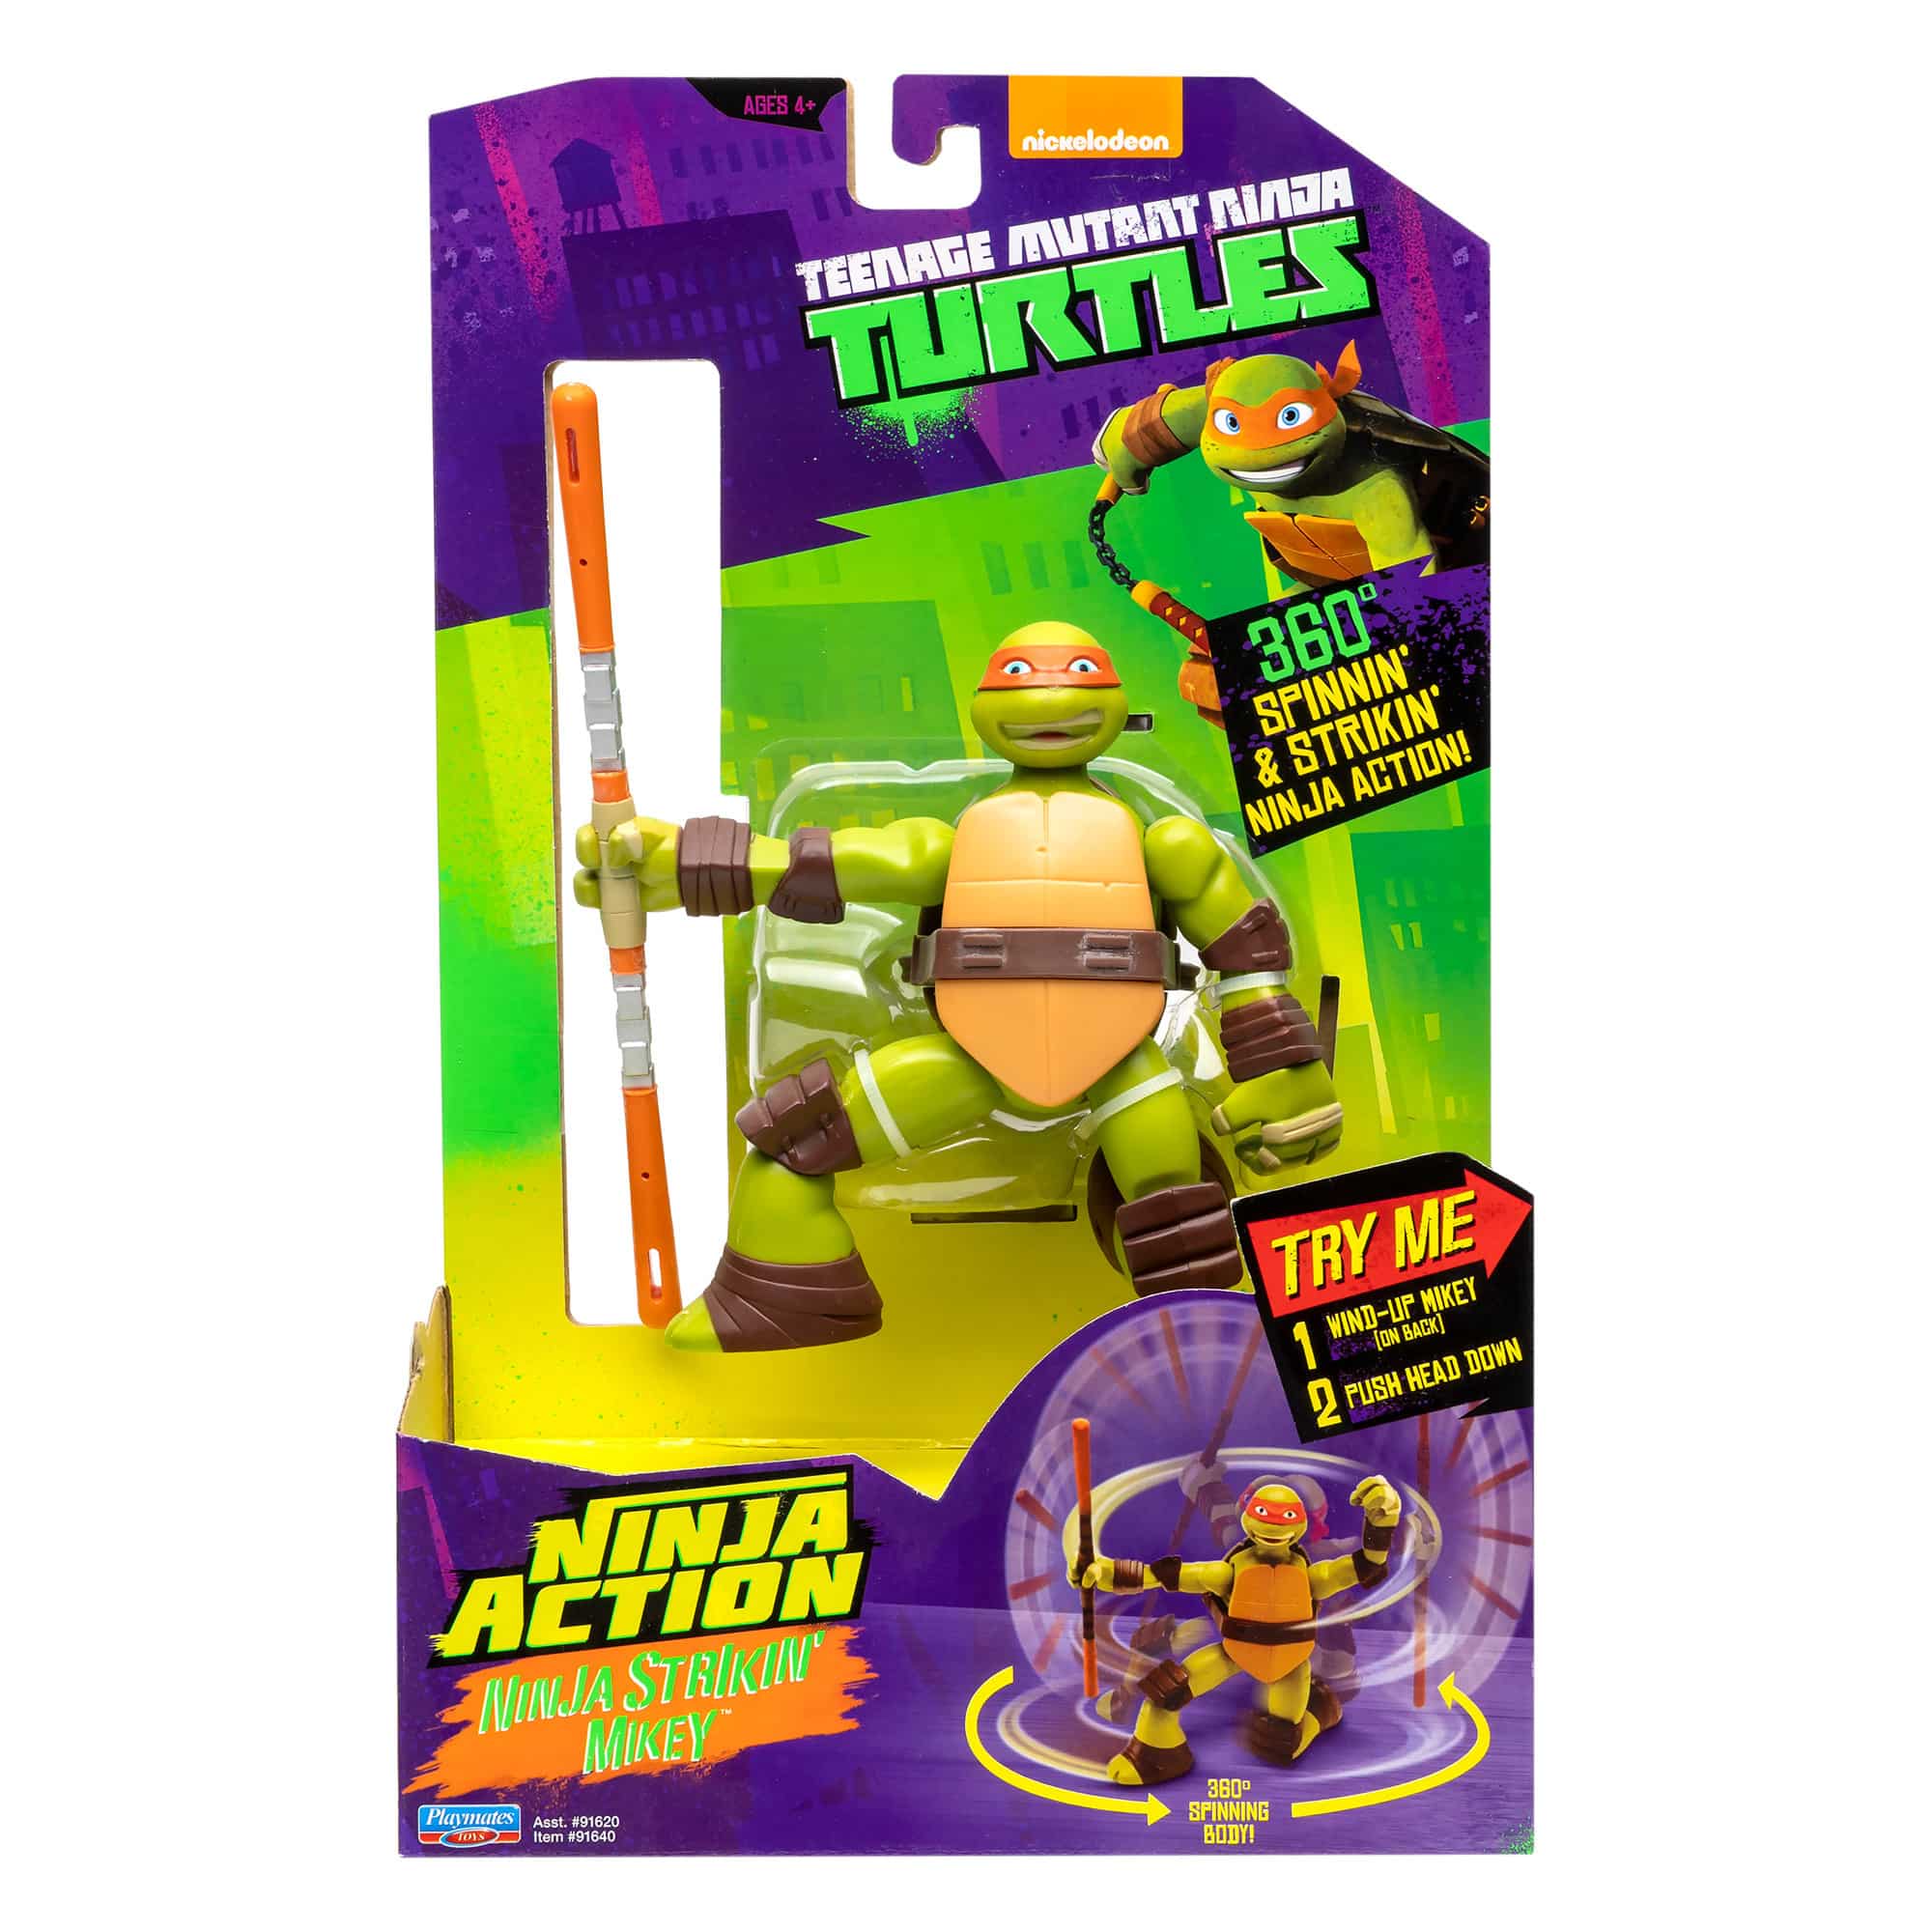 Teenage Mutant Ninja Turtles - Ninja Action - Ninja Strikin' Mikey